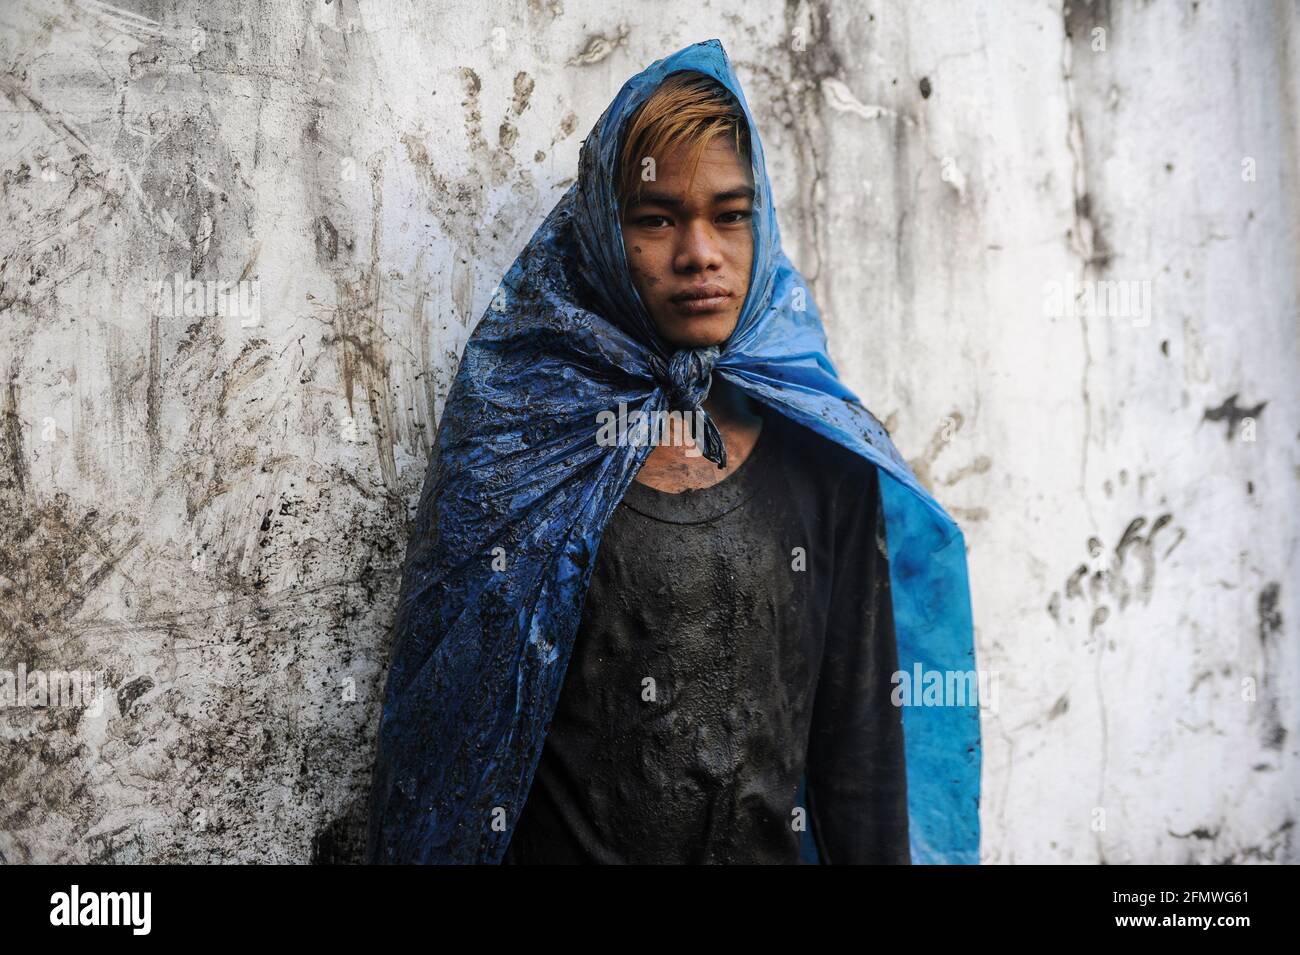 19.02.2014, Yangon, Myanmar, Asien - Porträt eines jungen Abwasserreinigers, der einfache Schutzkleidung aus zerrissenen Plastiktüten trägt, die Abflüsse reinigt. Stockfoto